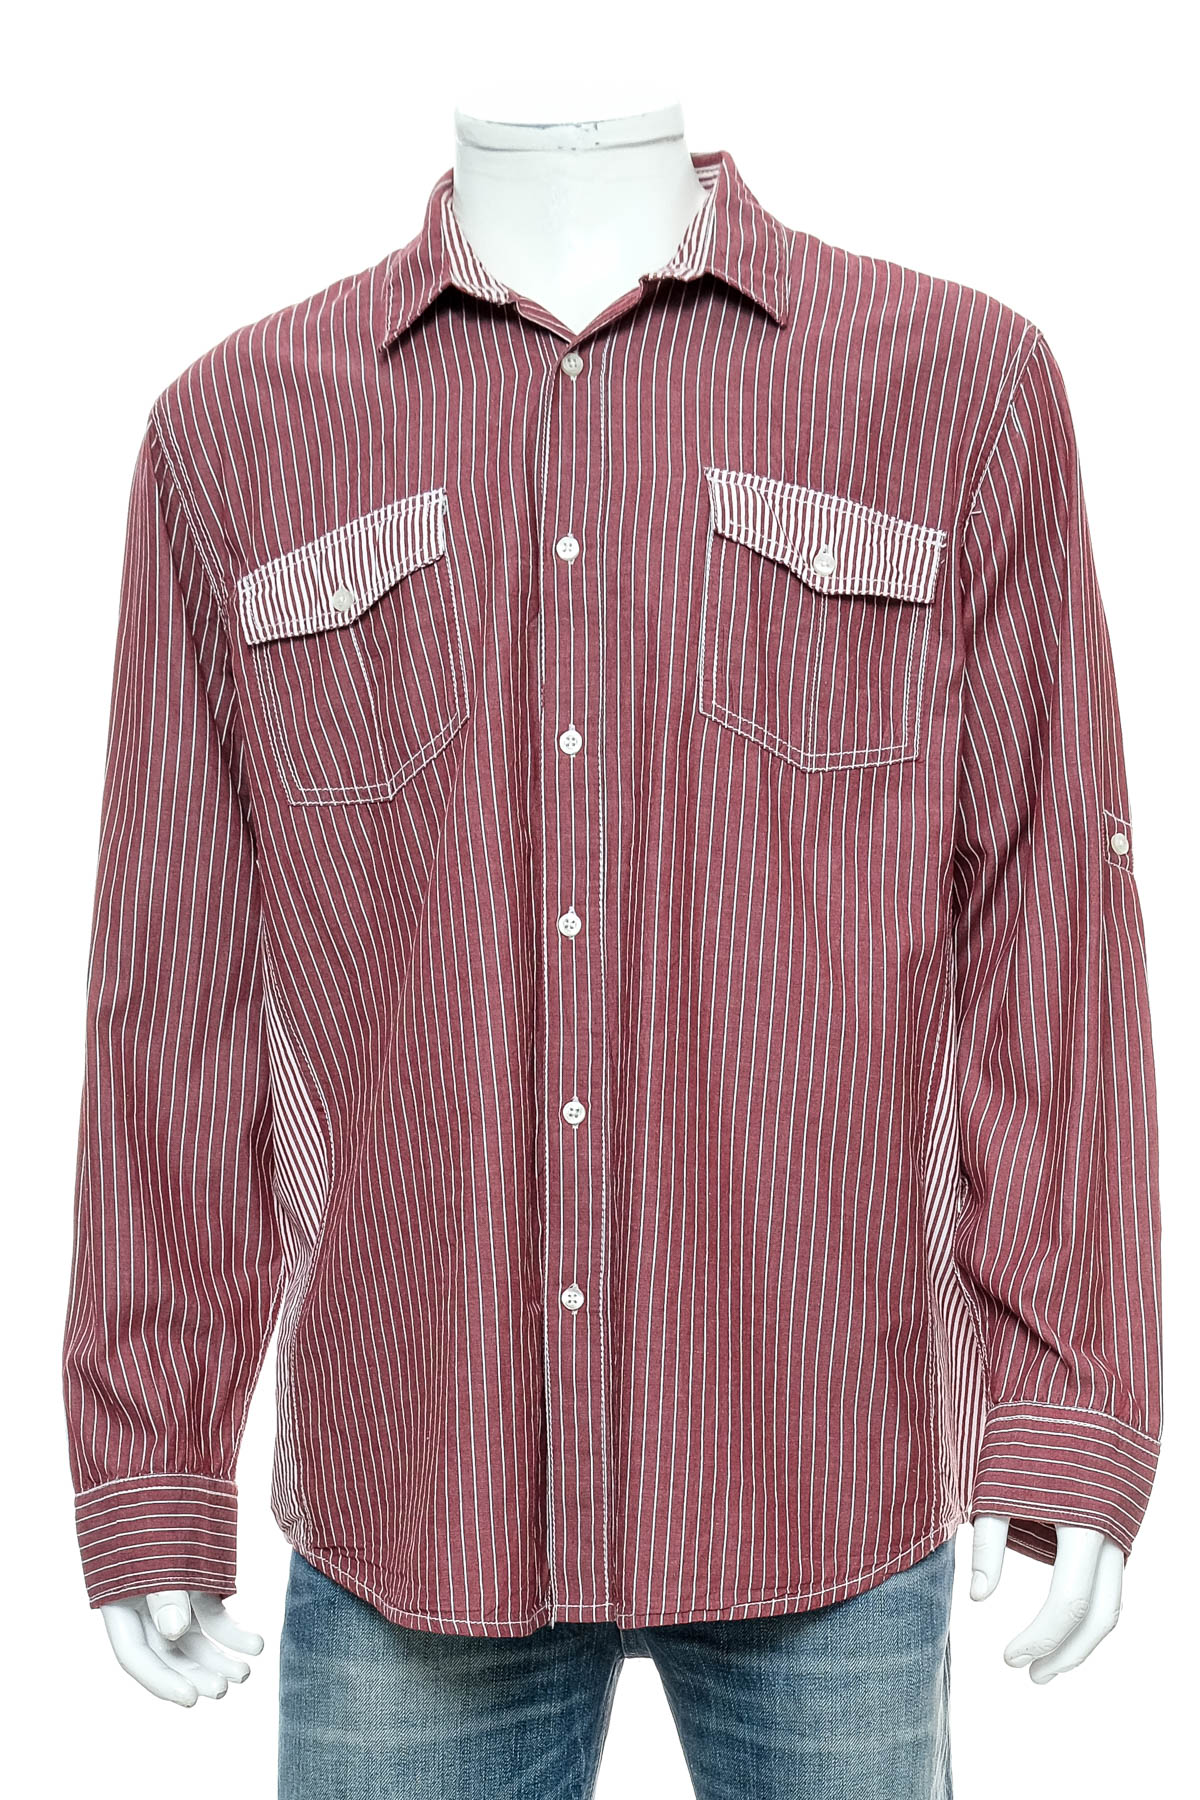 Ανδρικό πουκάμισο - American Rag Cie - 0